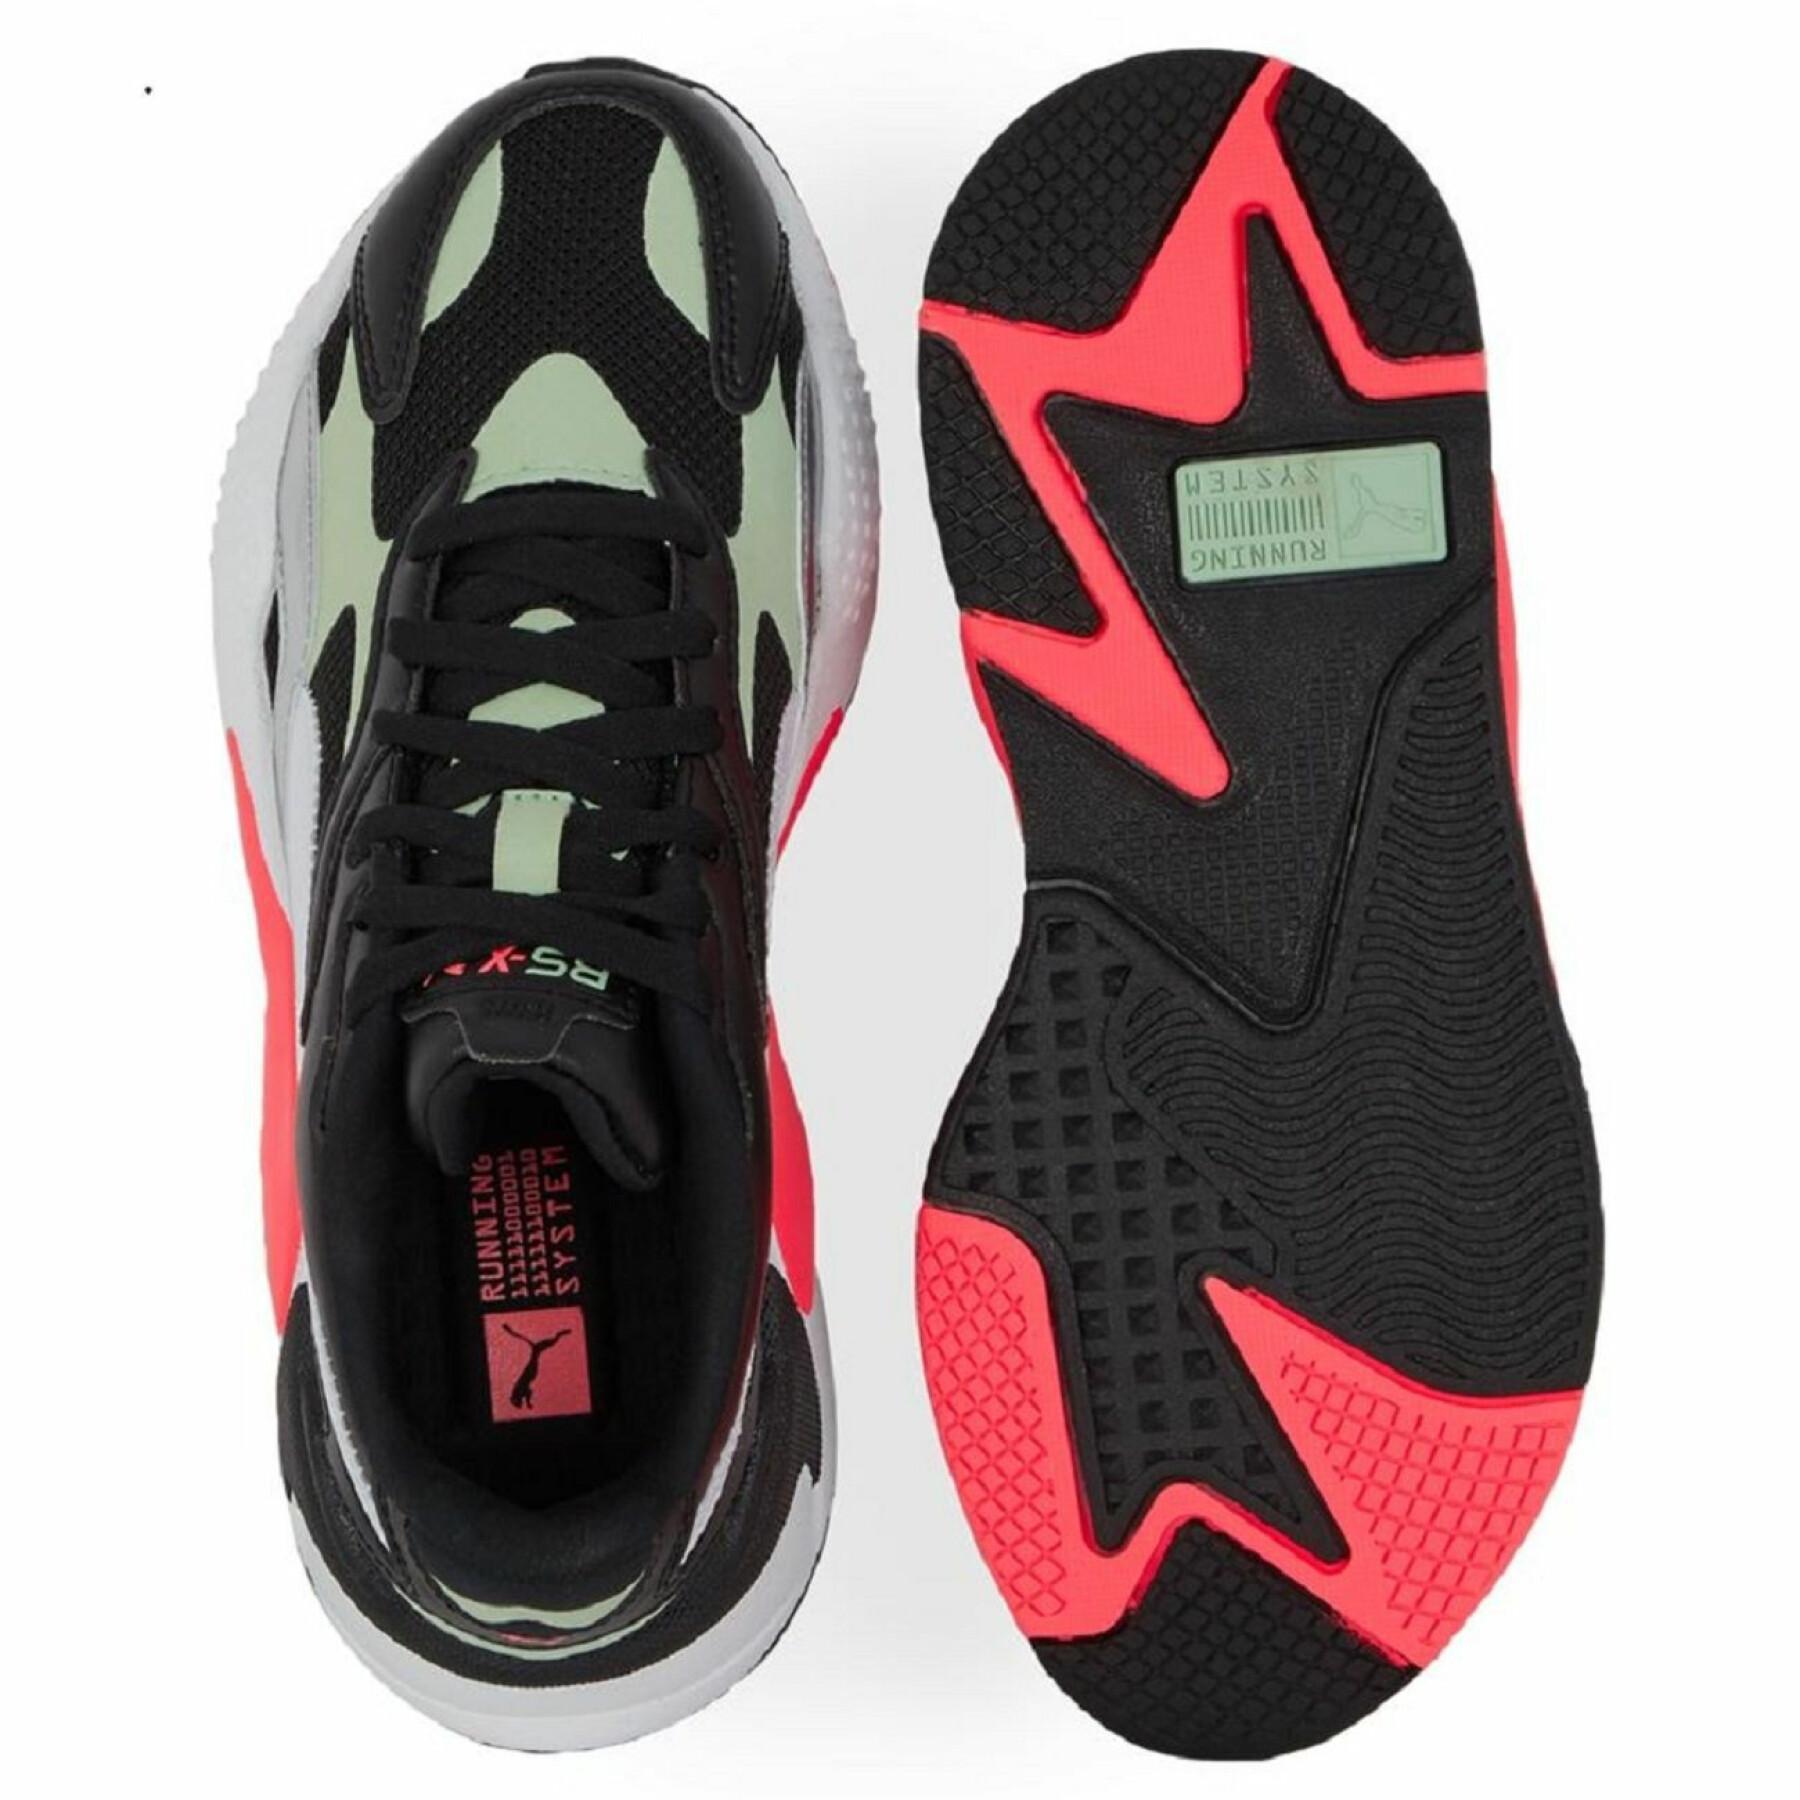 Women's sneakers Puma RS-X³ Shine